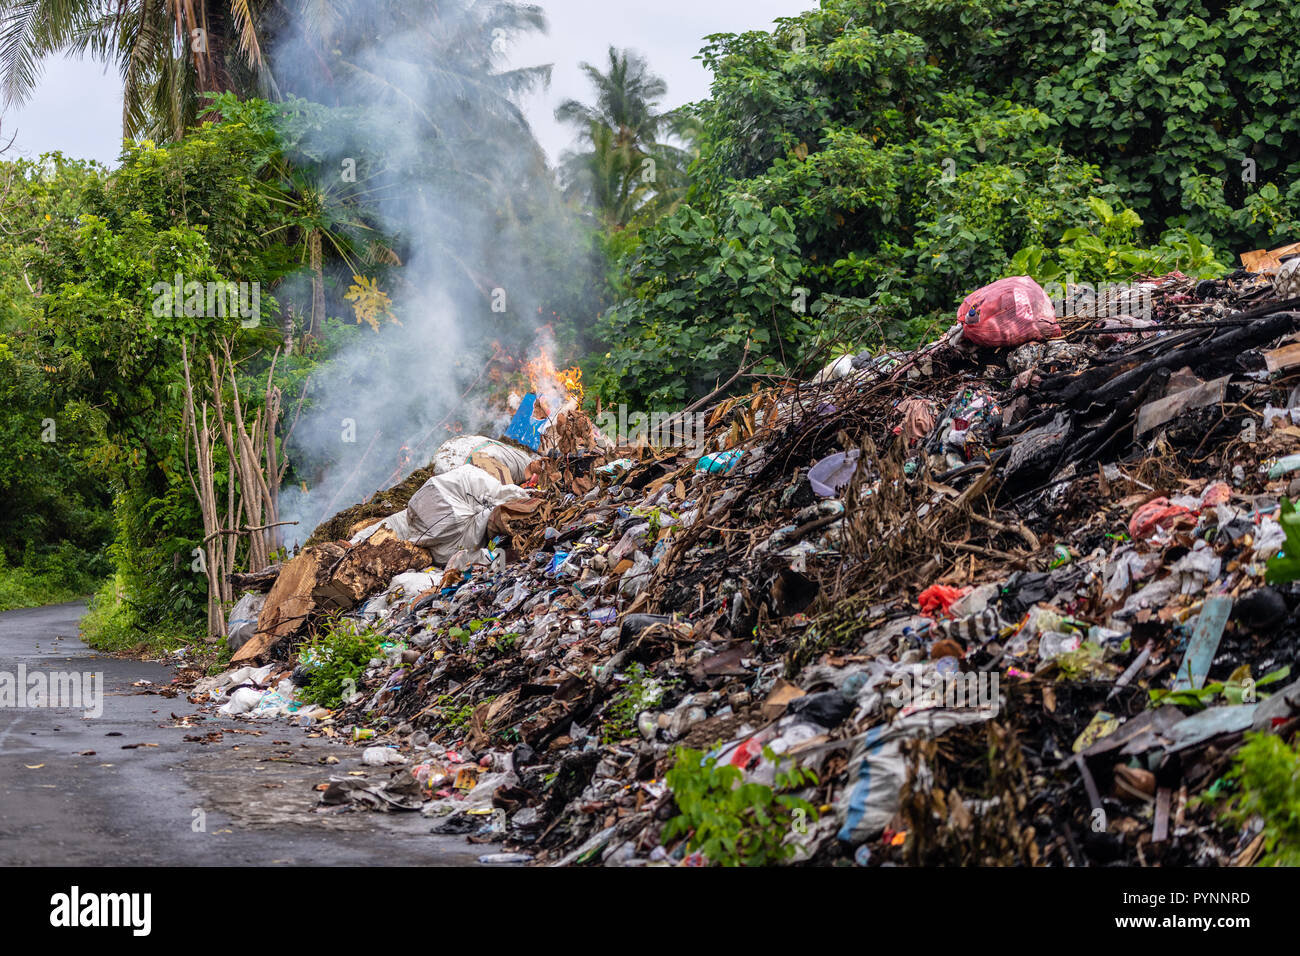 Tonnes de déchets industriels le long de la route de gravure dans la banda Neira island, Indonésie Banque D'Images